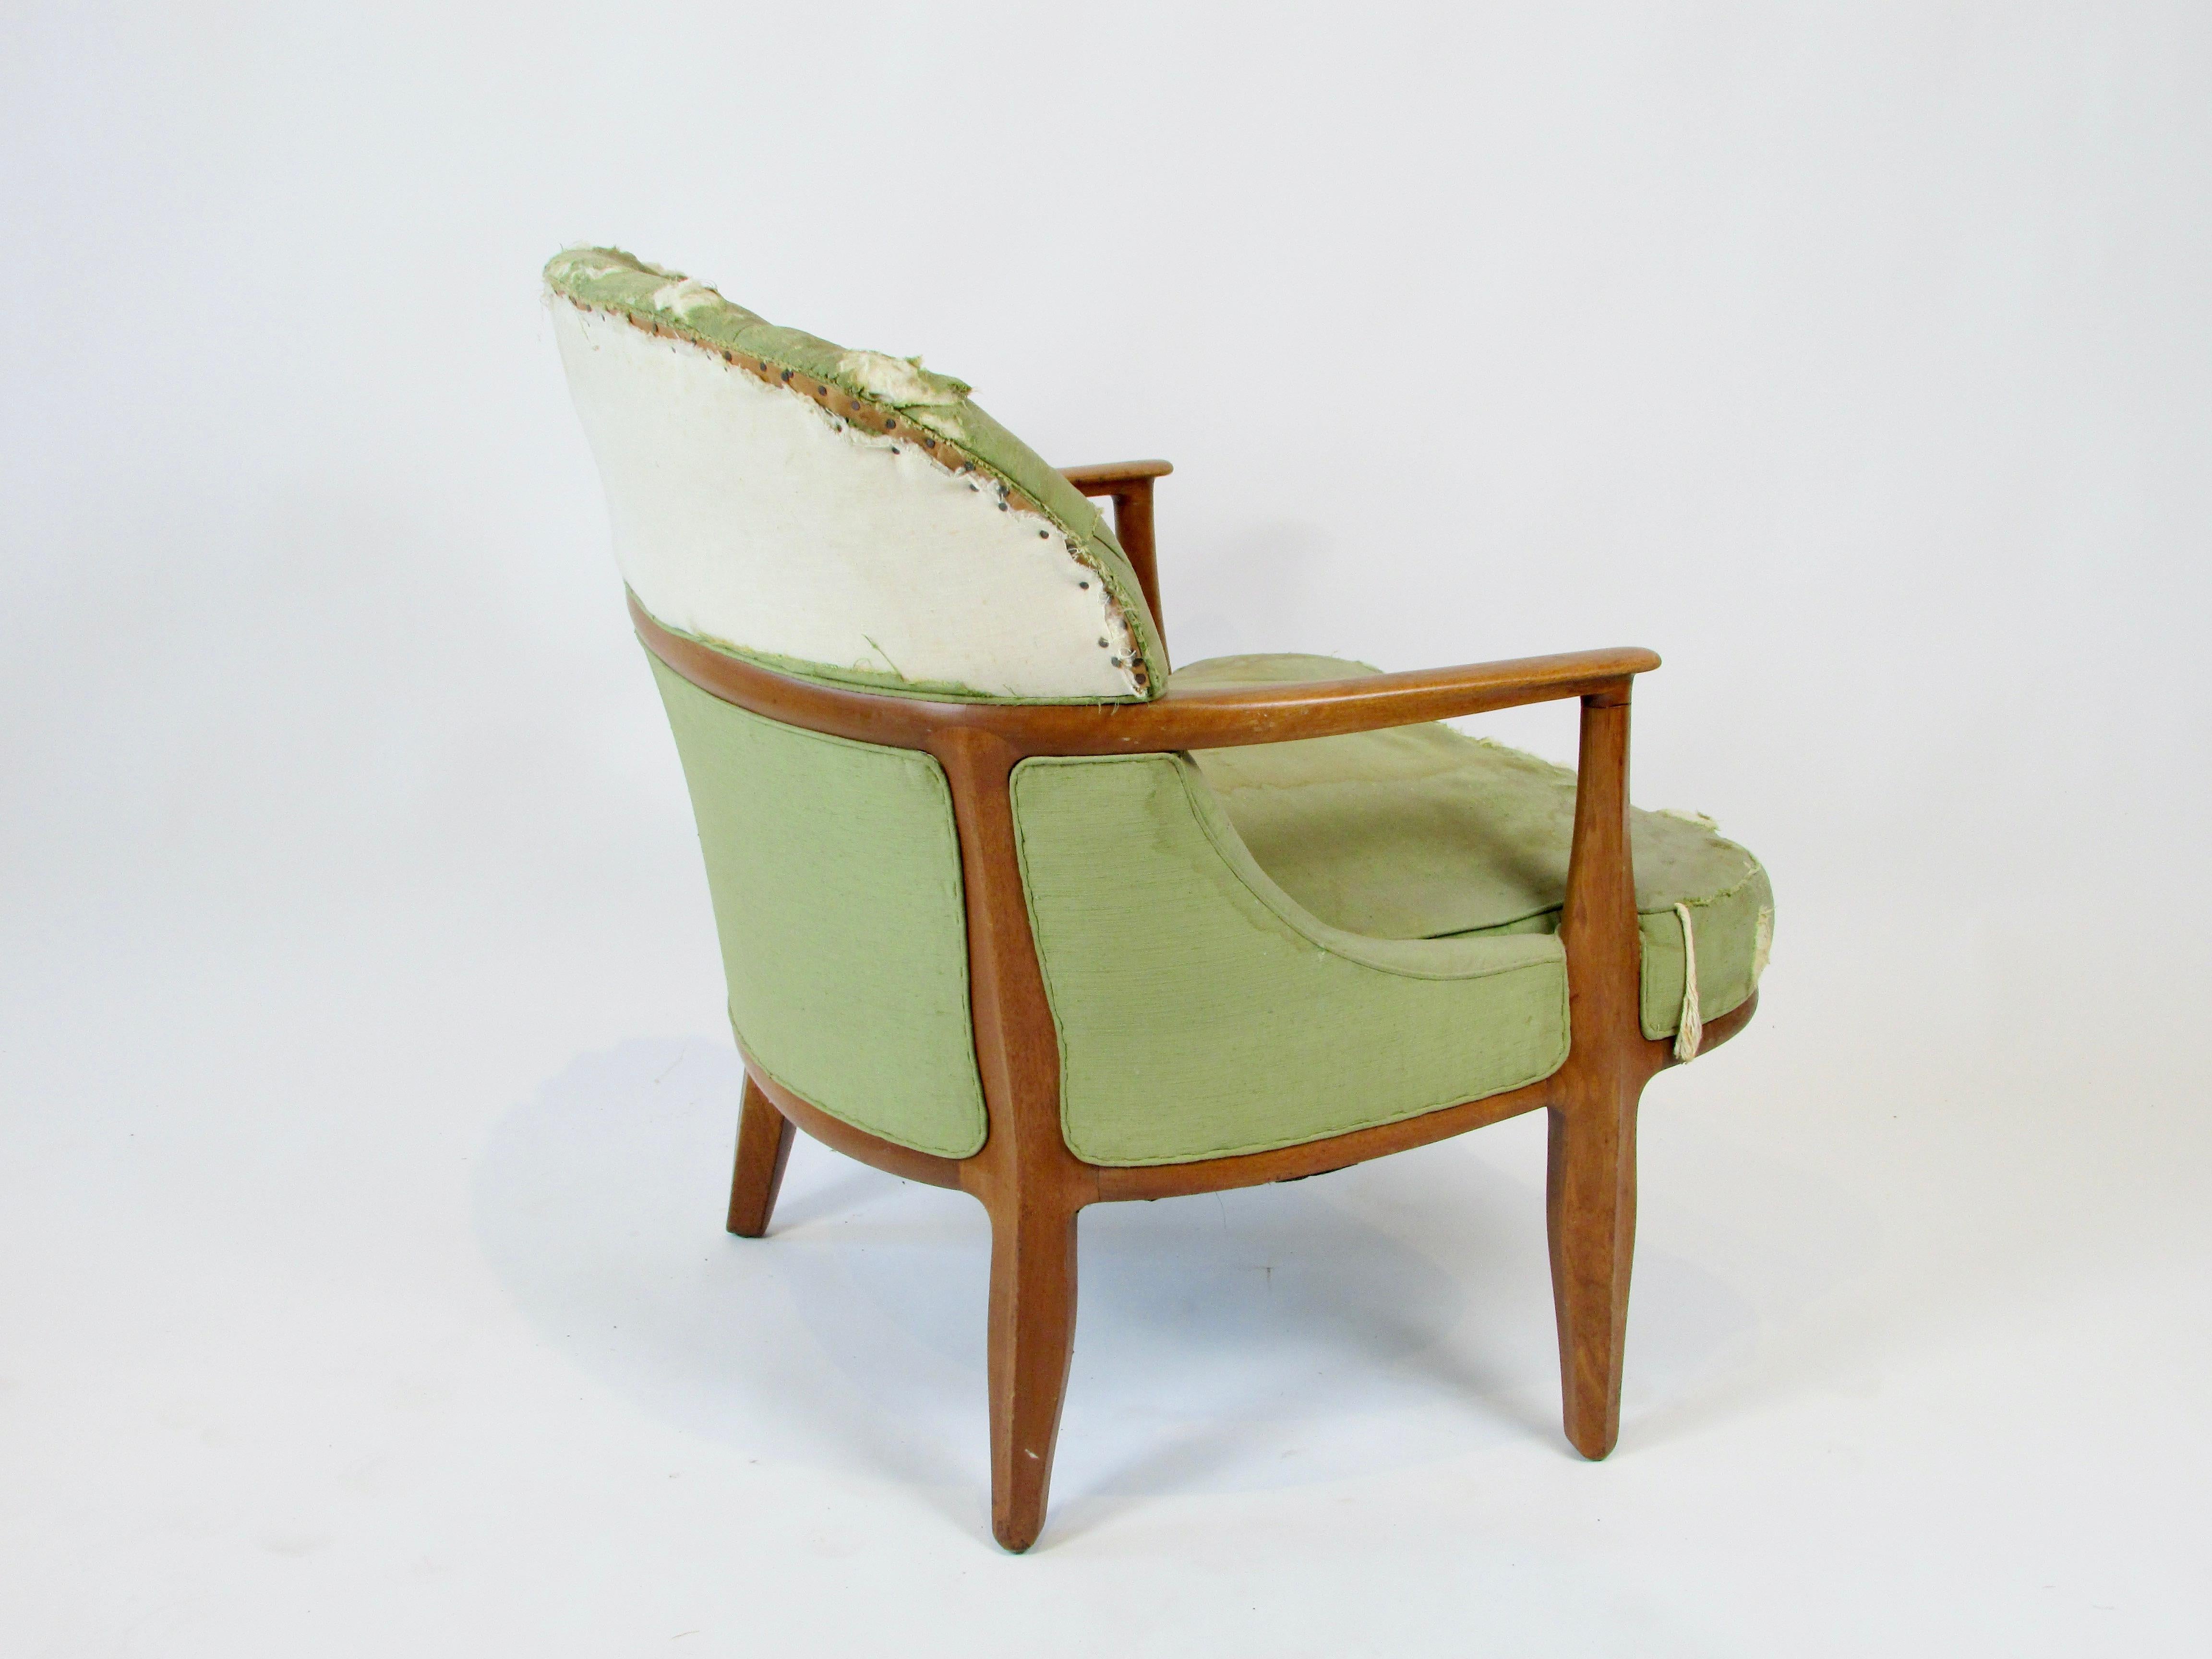 20th Century As found  single Edward Wormley Dunbar wood trim Janus chair model 5705